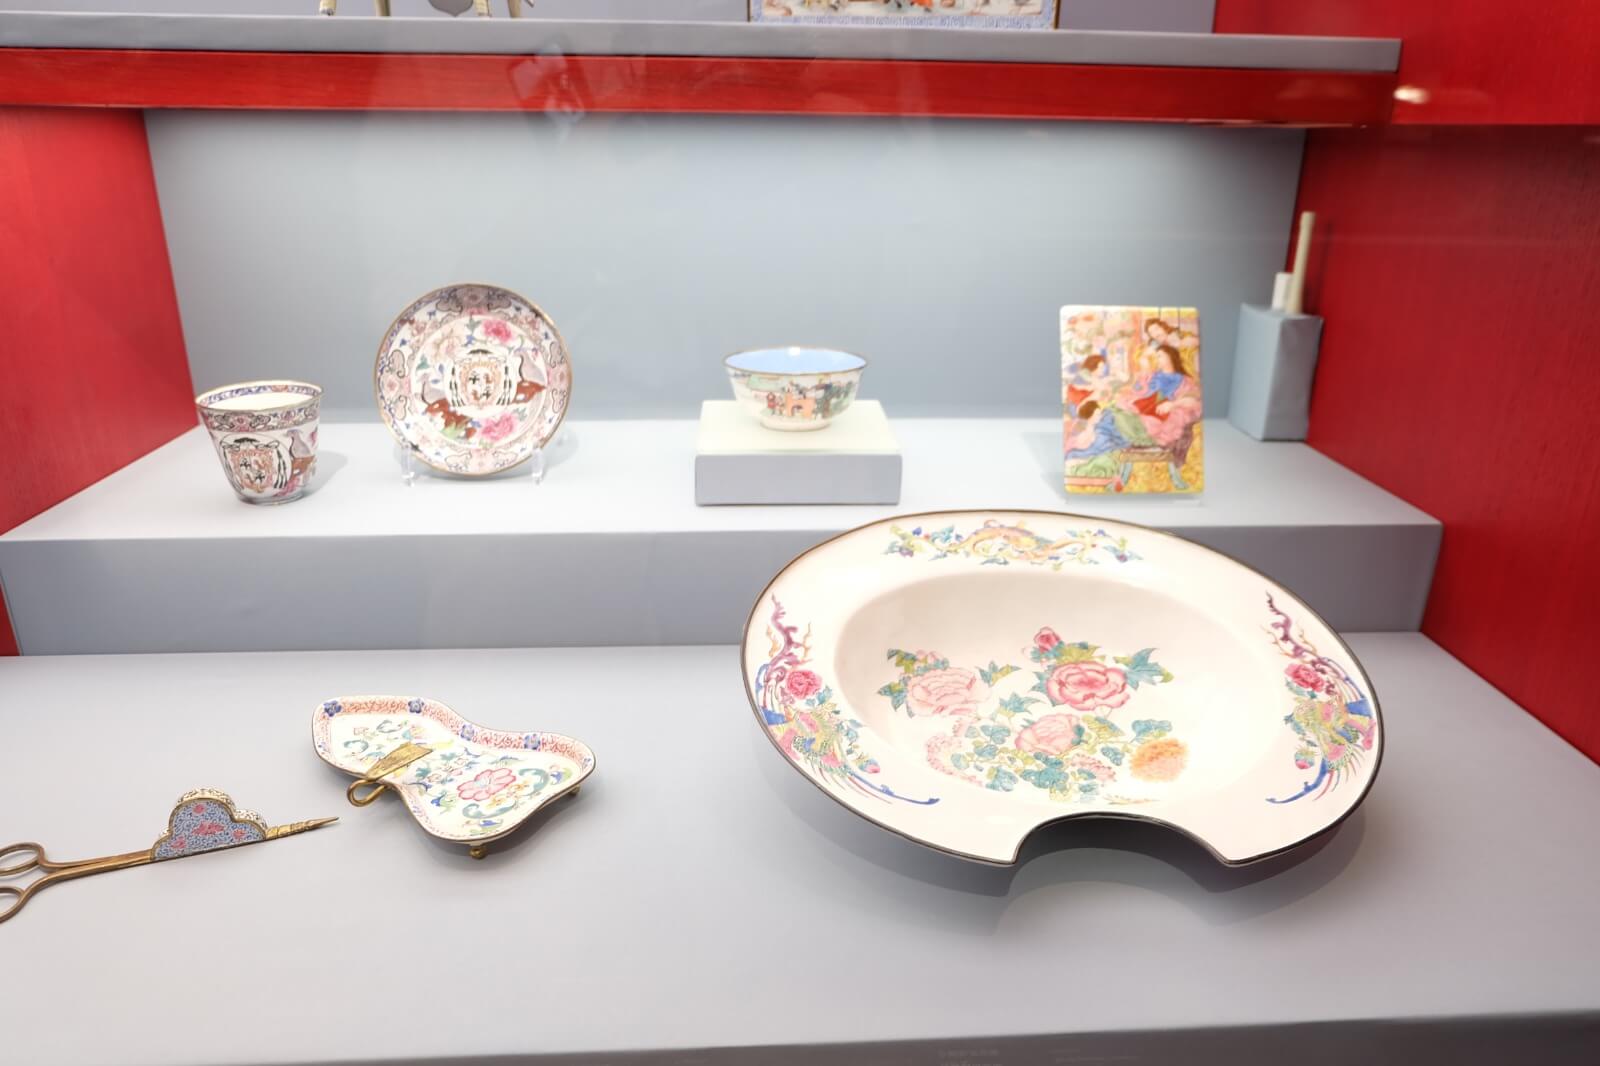 《廣州購物誌──18至19世紀外銷藝術》展示了當年廣州為外國製作的工藝產品